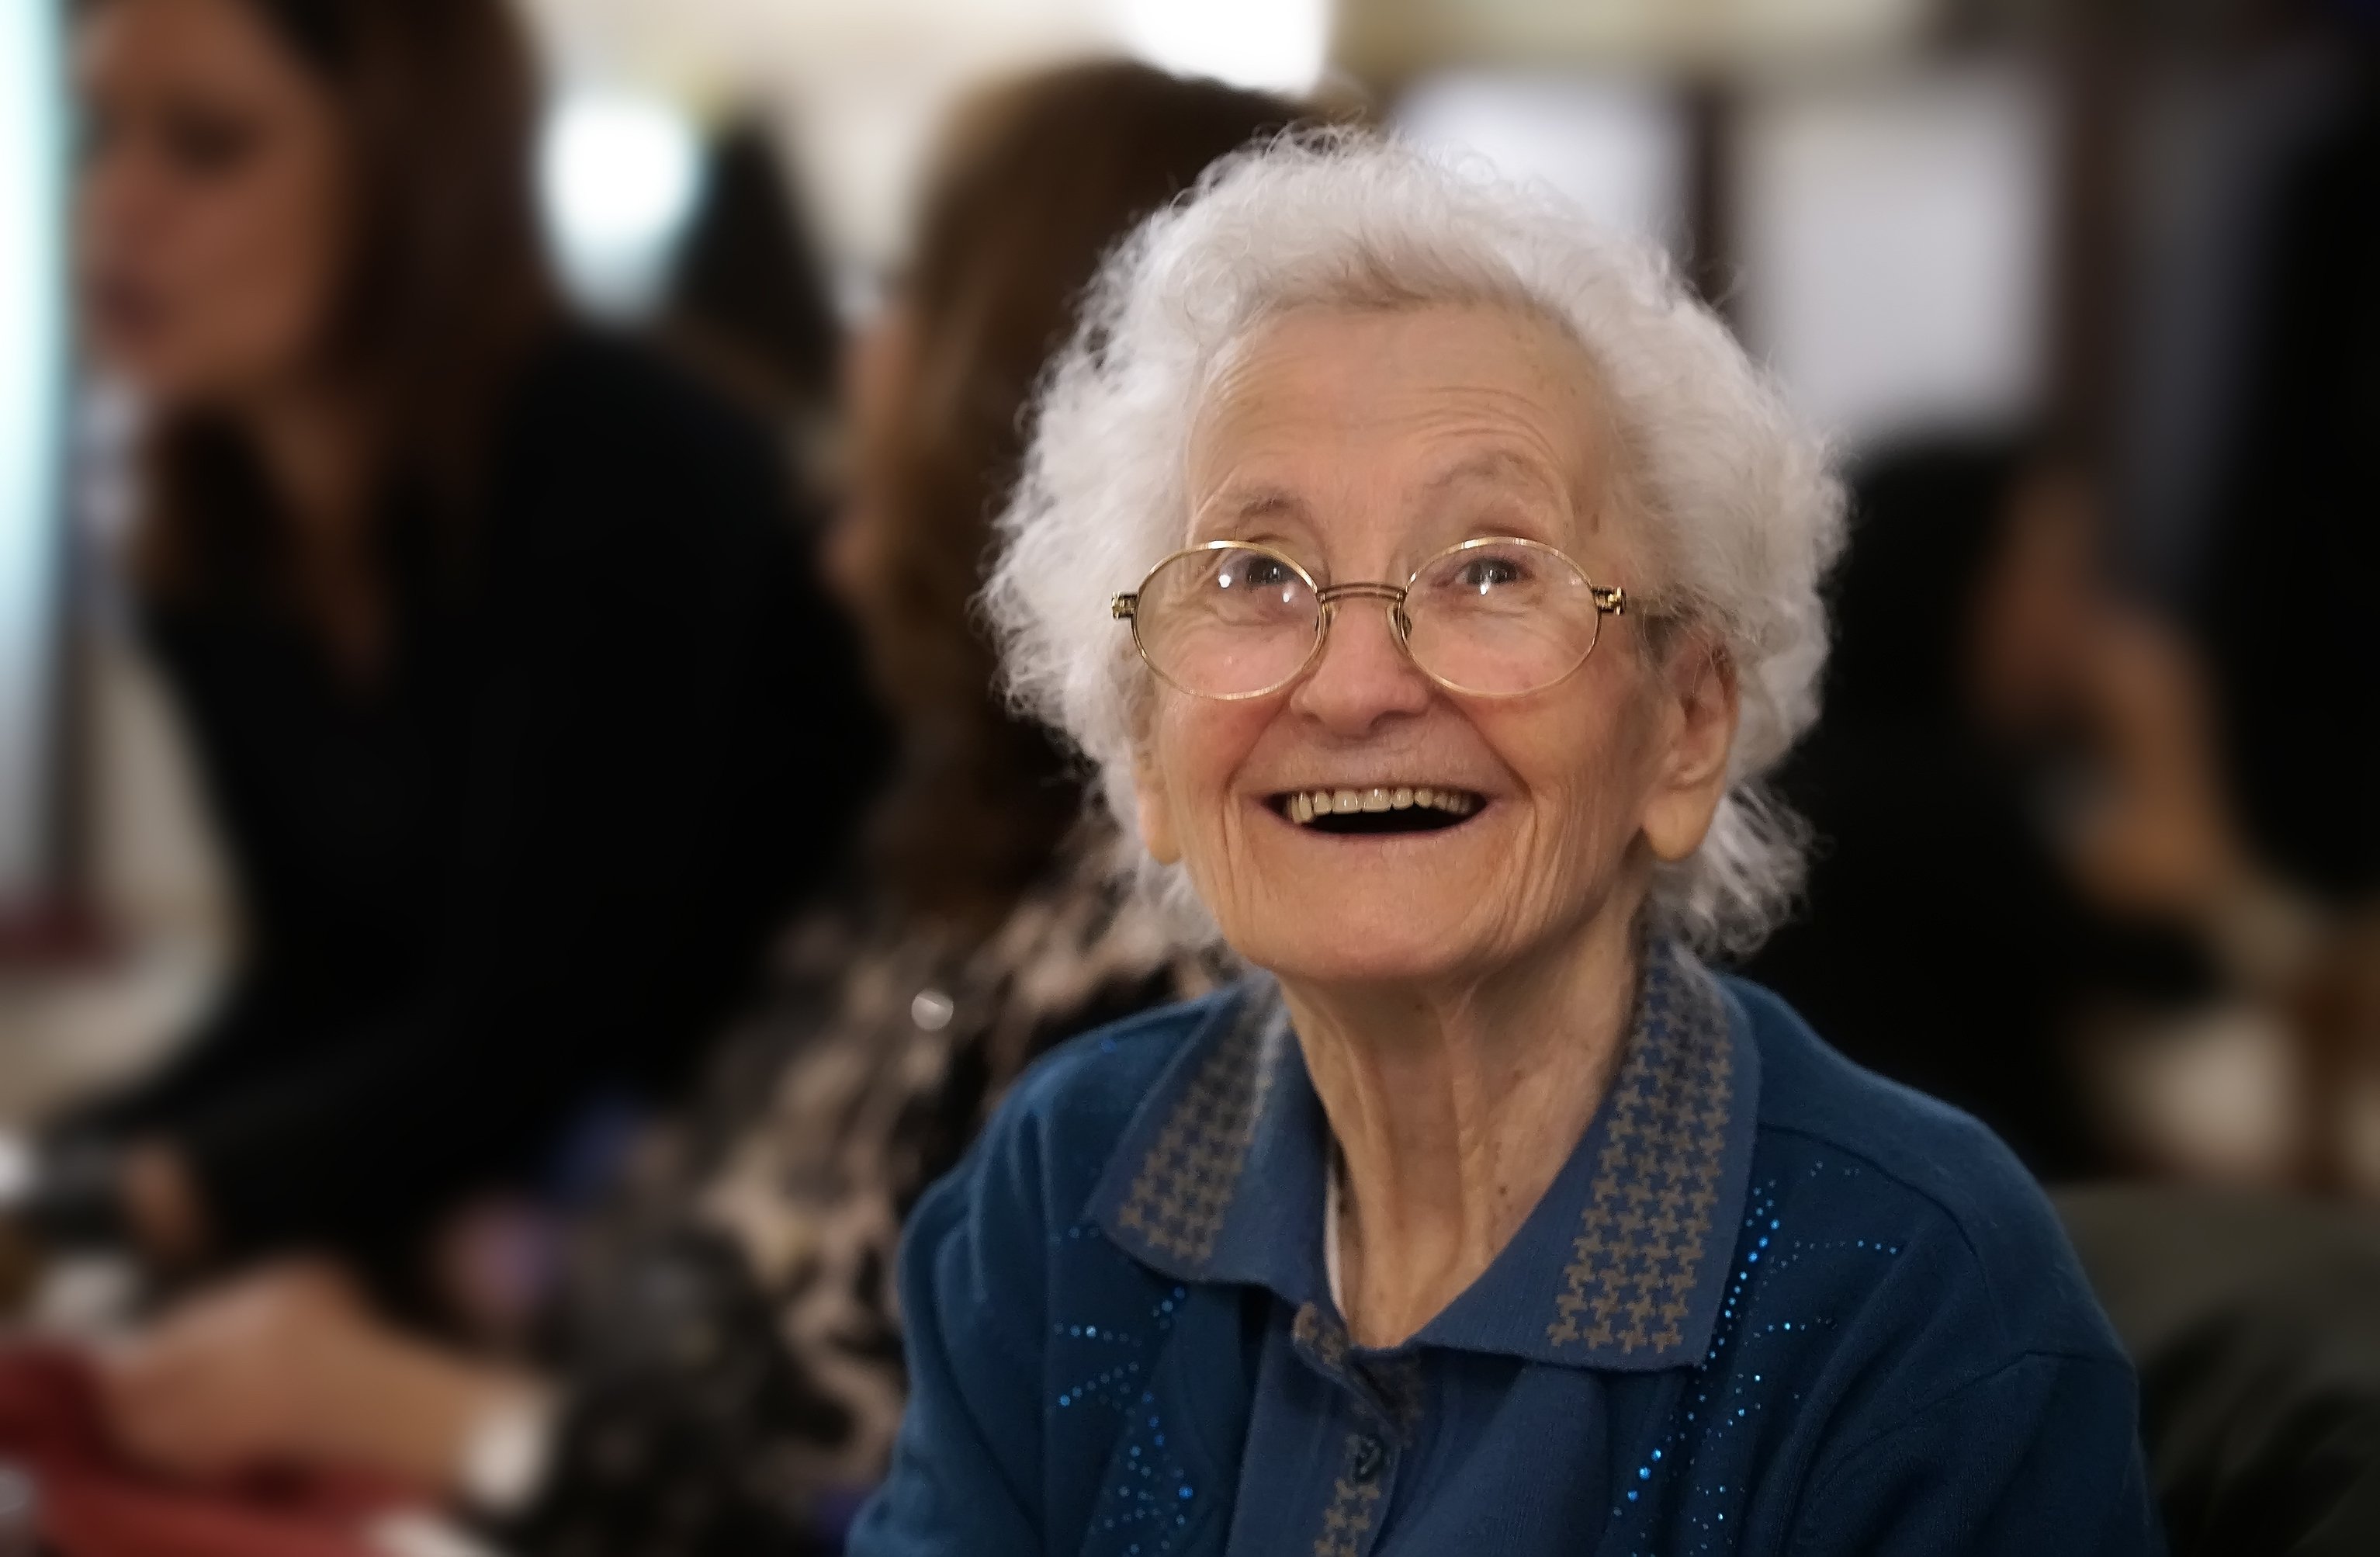 Portrait of an happy elderly woman smiling | Photo: Shutterstock